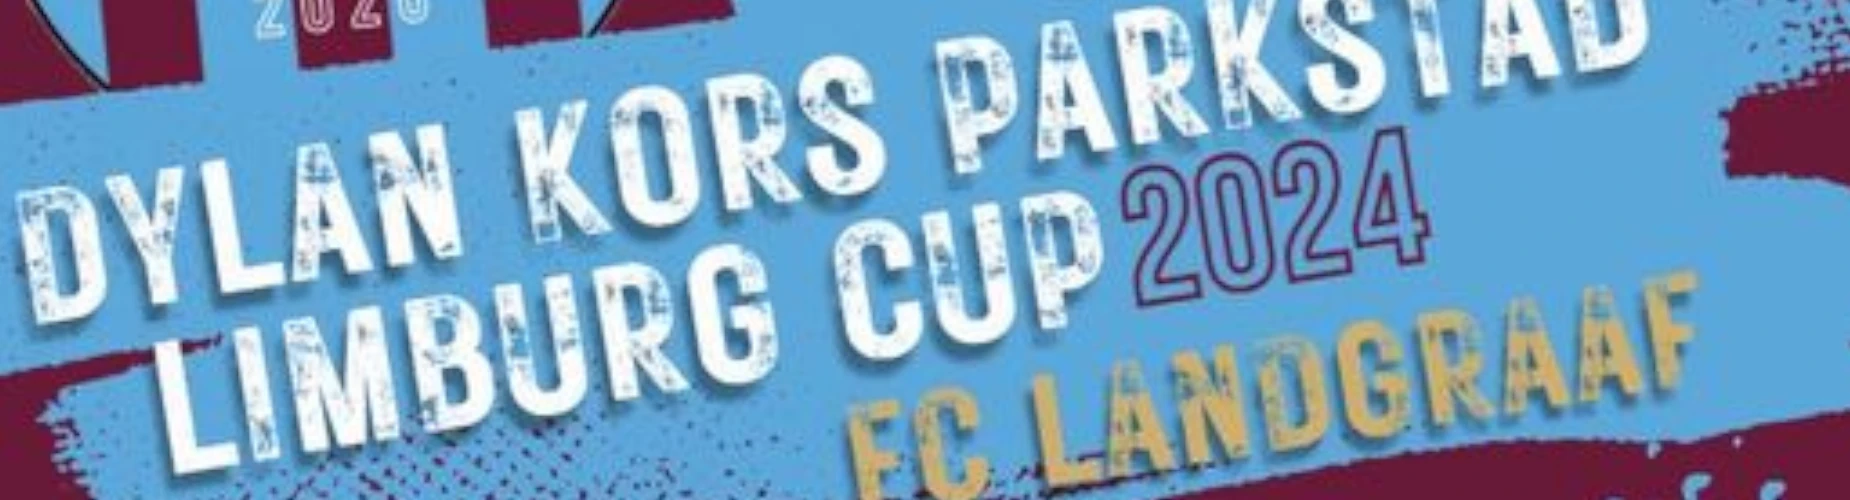 Banner - Dylan Kors – Parkstad Limburg Cup! - FC Landgraaf - Landgraaf